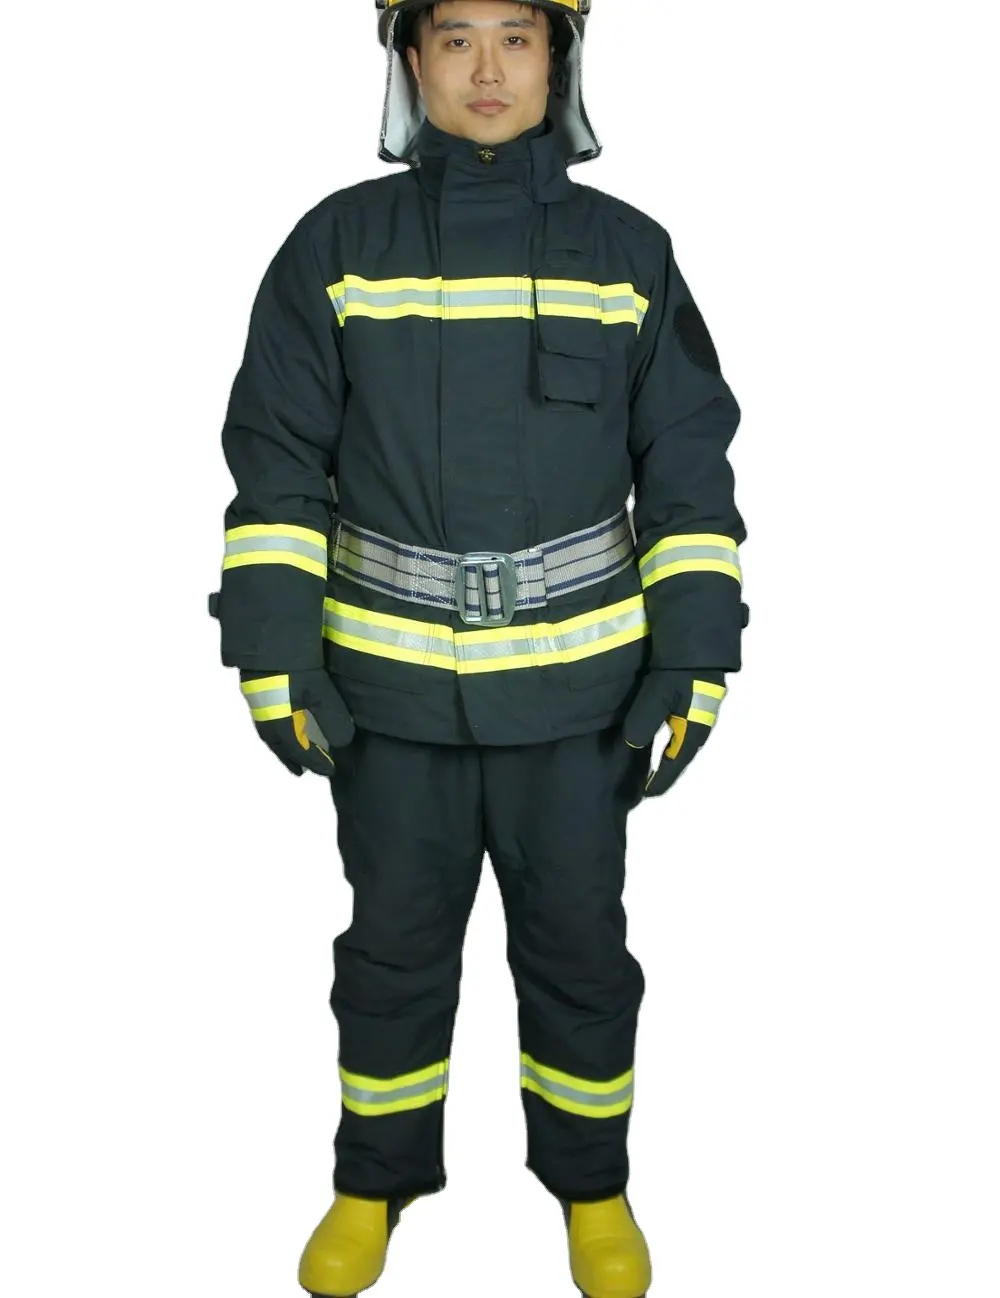 Uniforme de seguridad para bomberos de aramida, ignífugo, EN469 CE 3C